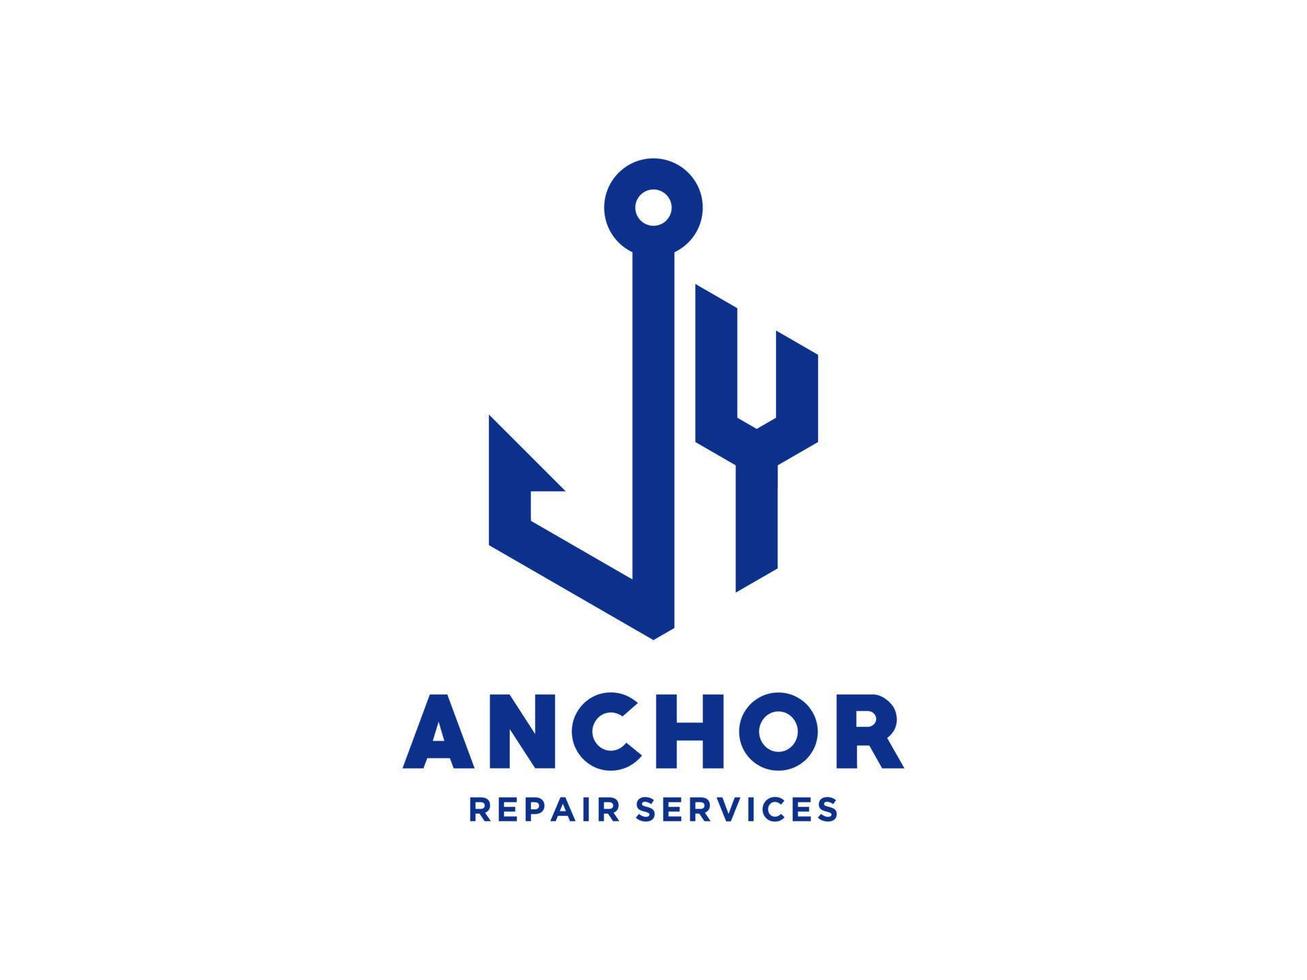 création de logo y ancre alphabet artistique pour bateau bateau marine transport nautique vecteur libre